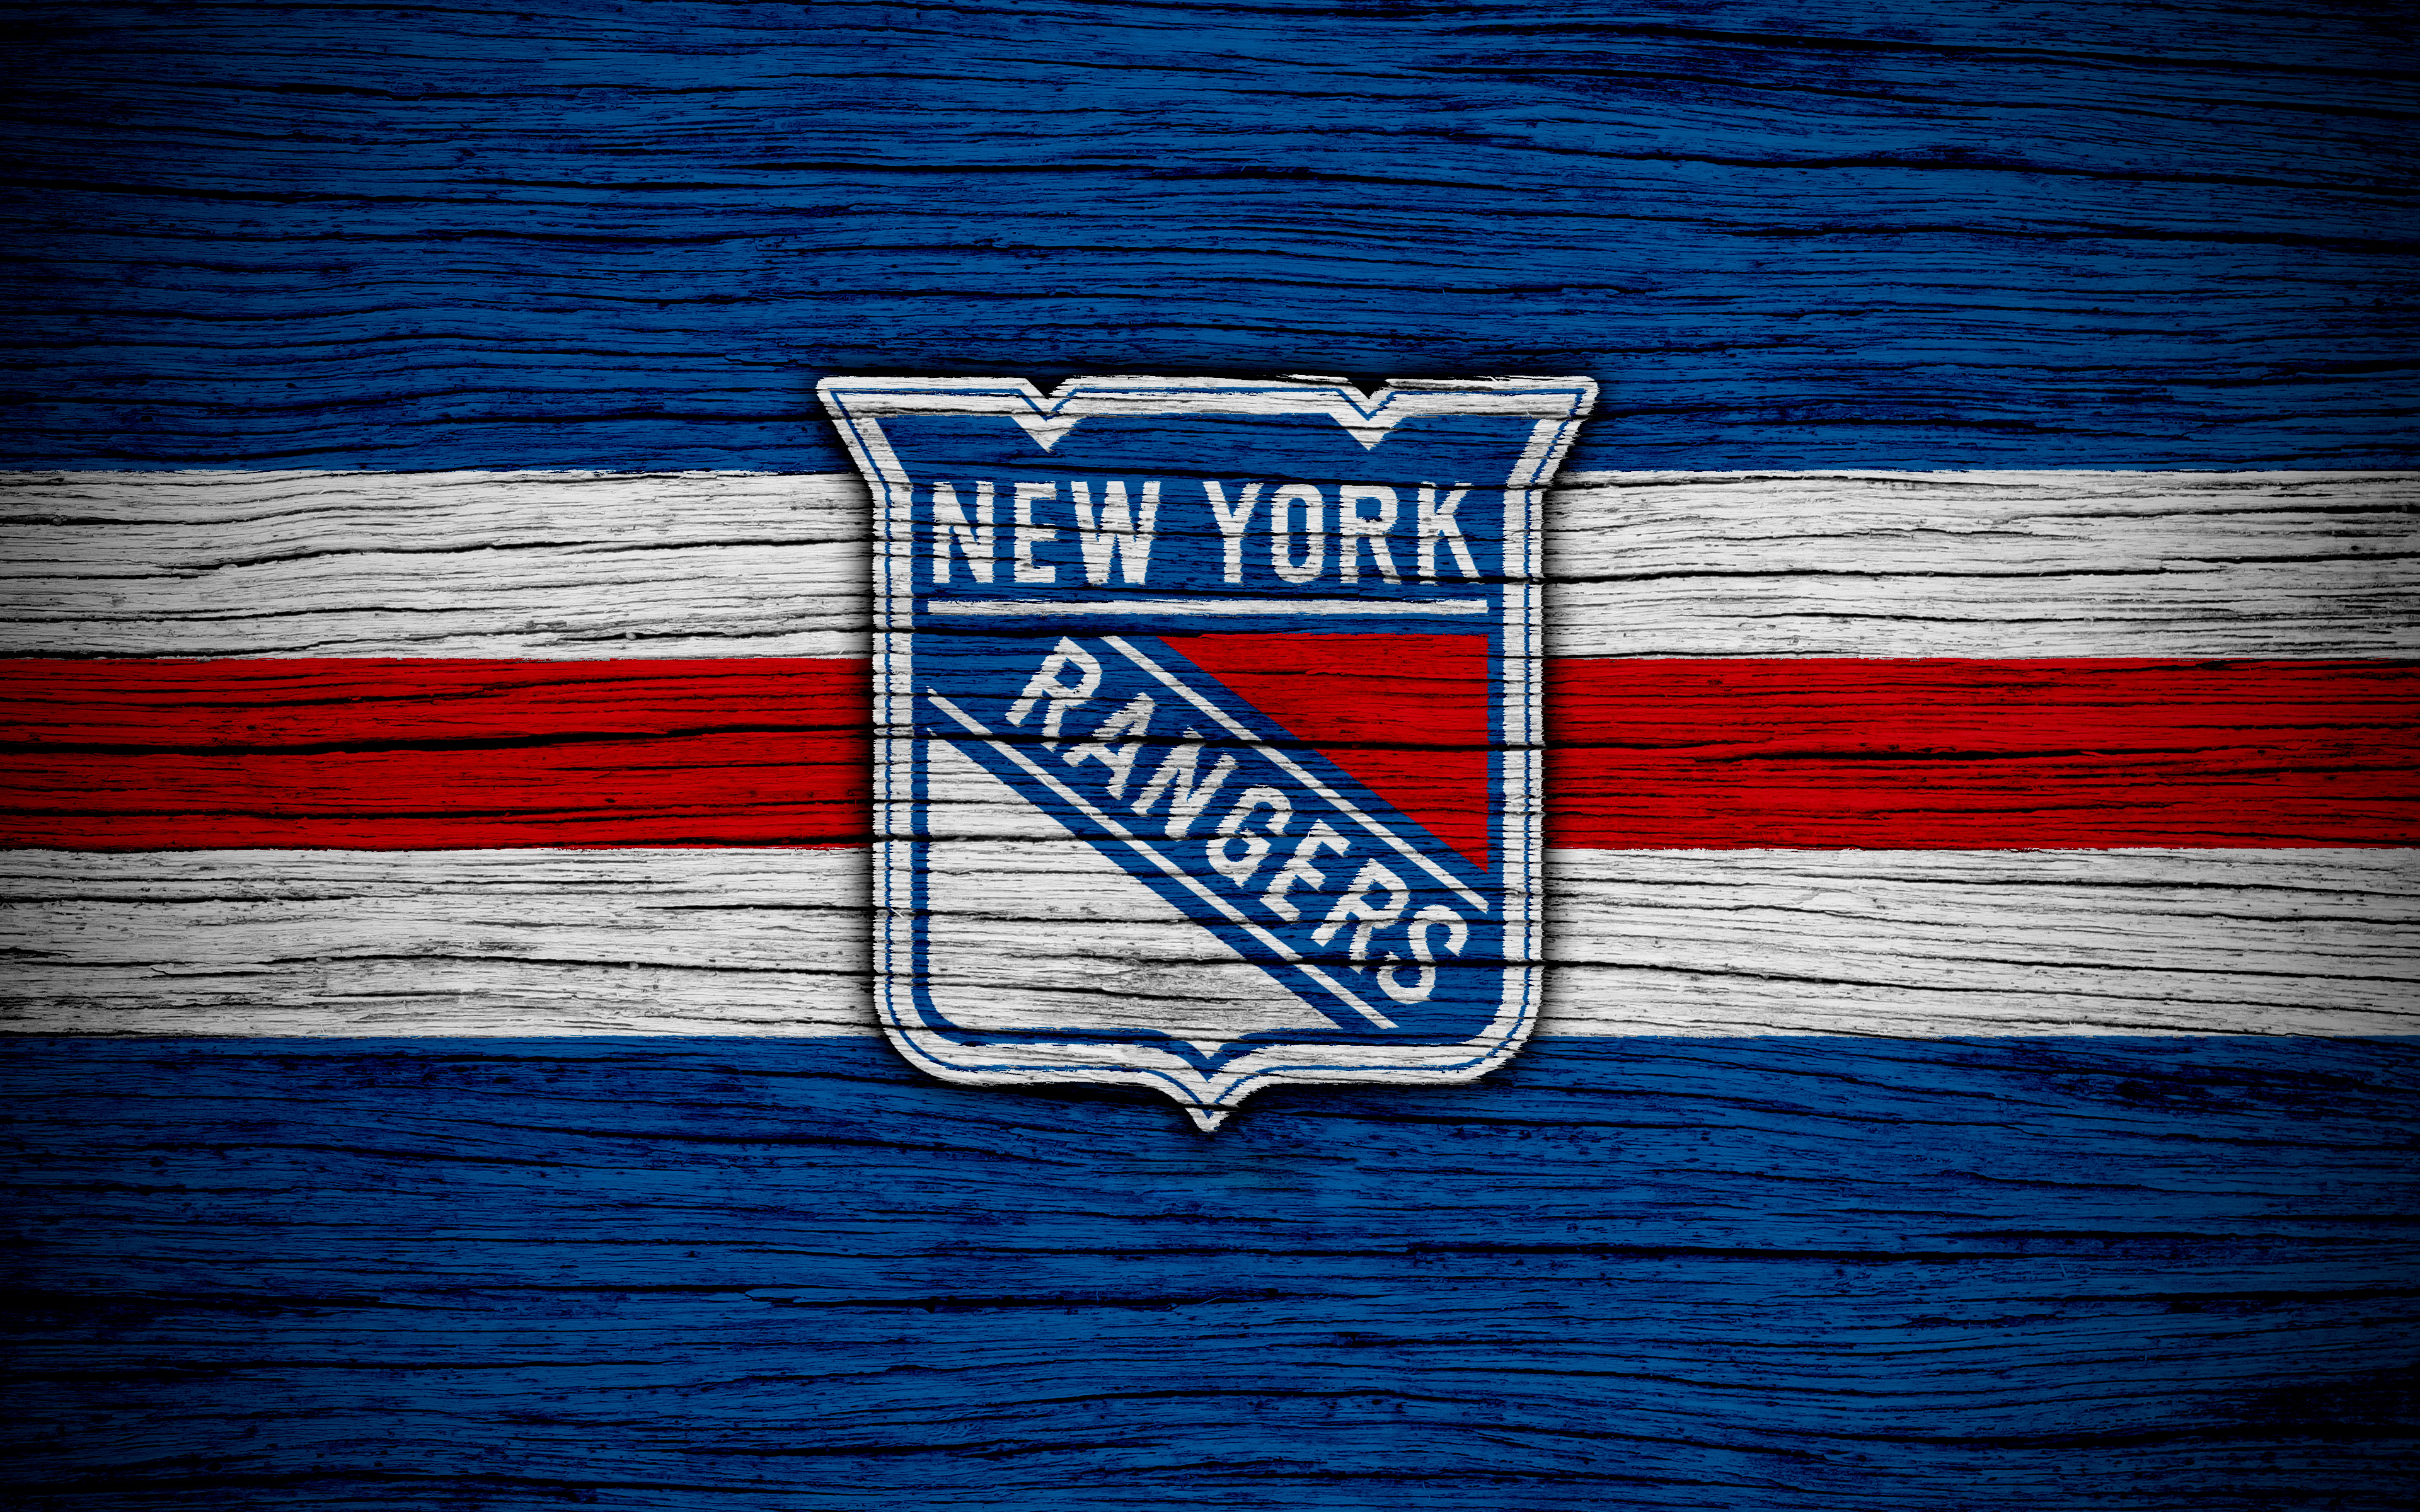 New York Rangers Wallpaper 2018 - HD Wallpaper 